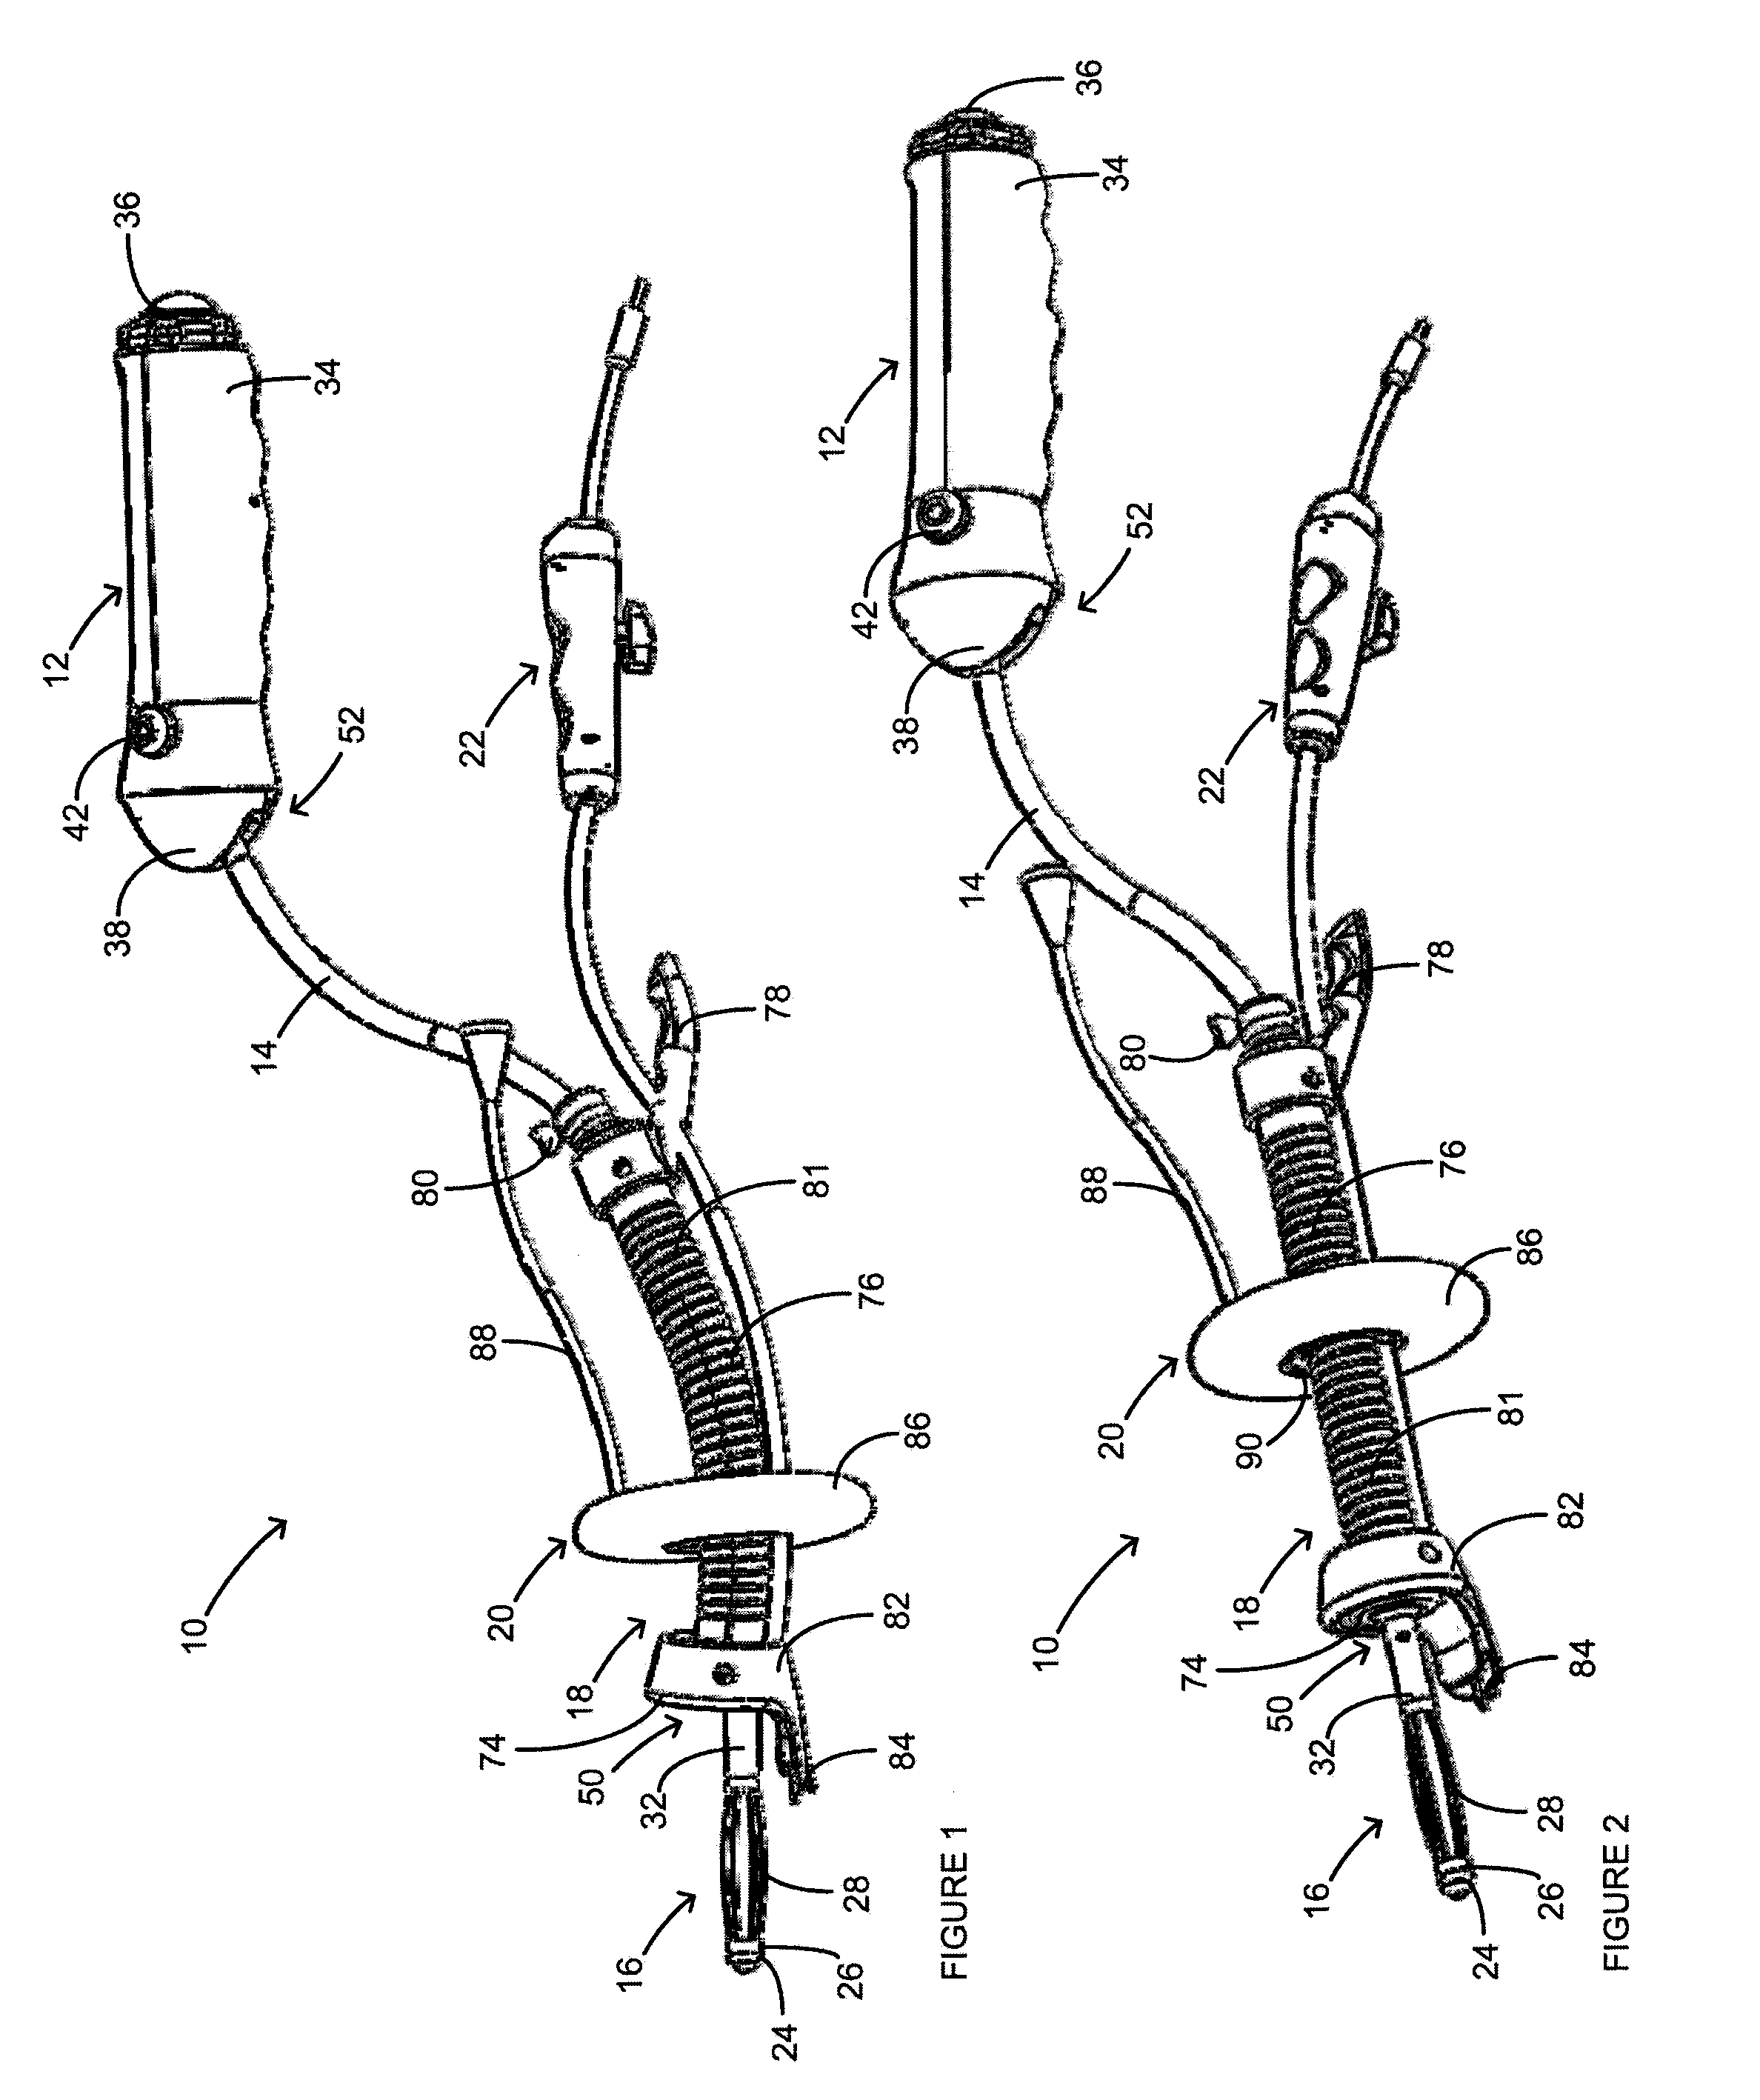 Functional uterine manipulator